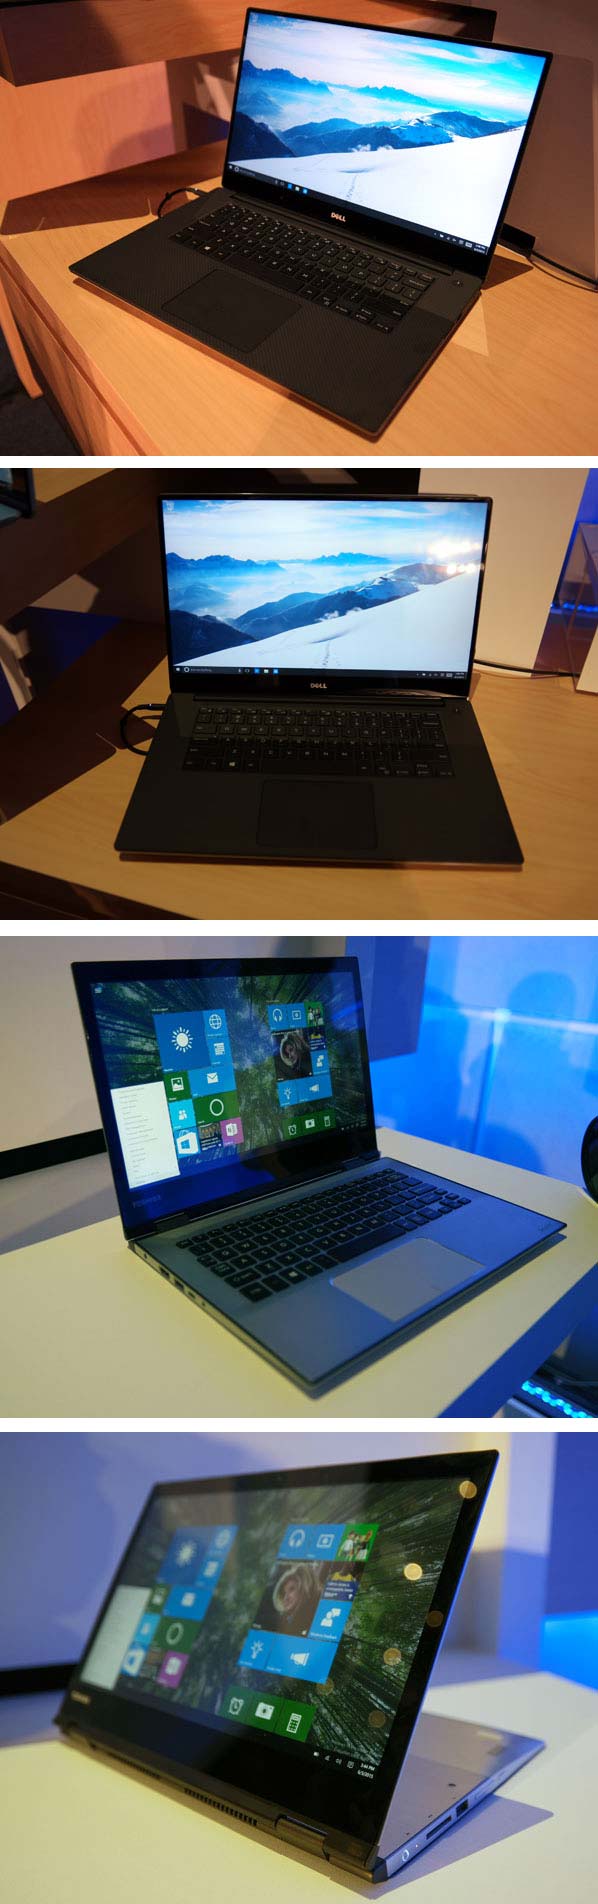 На фото ноутбуки Dell XPS 15 и Toshiba Astrea